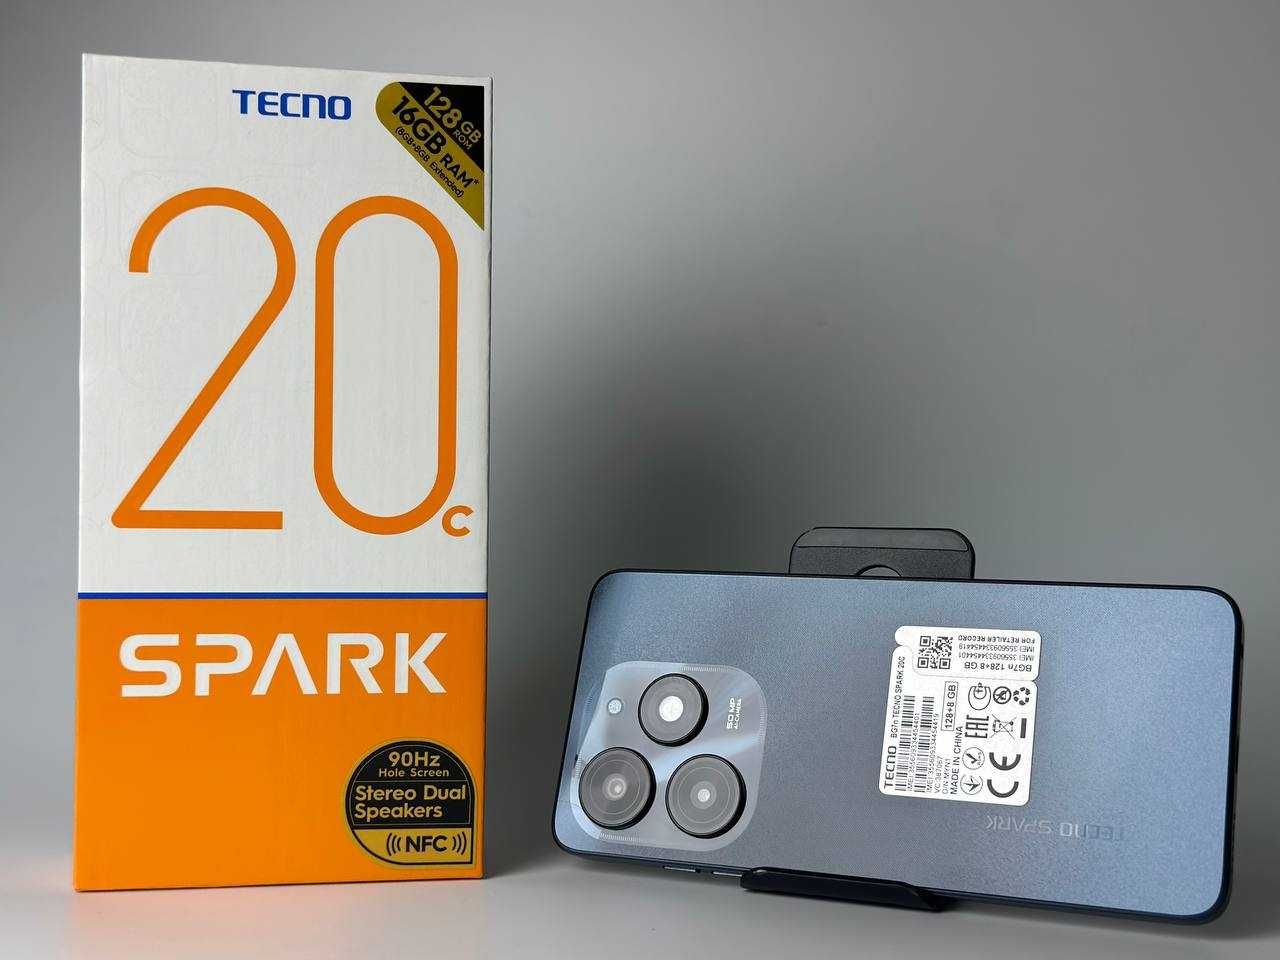 Мобільний телефон Tecno Spark 20C 8/128GB NFC Black Смартфон Купити